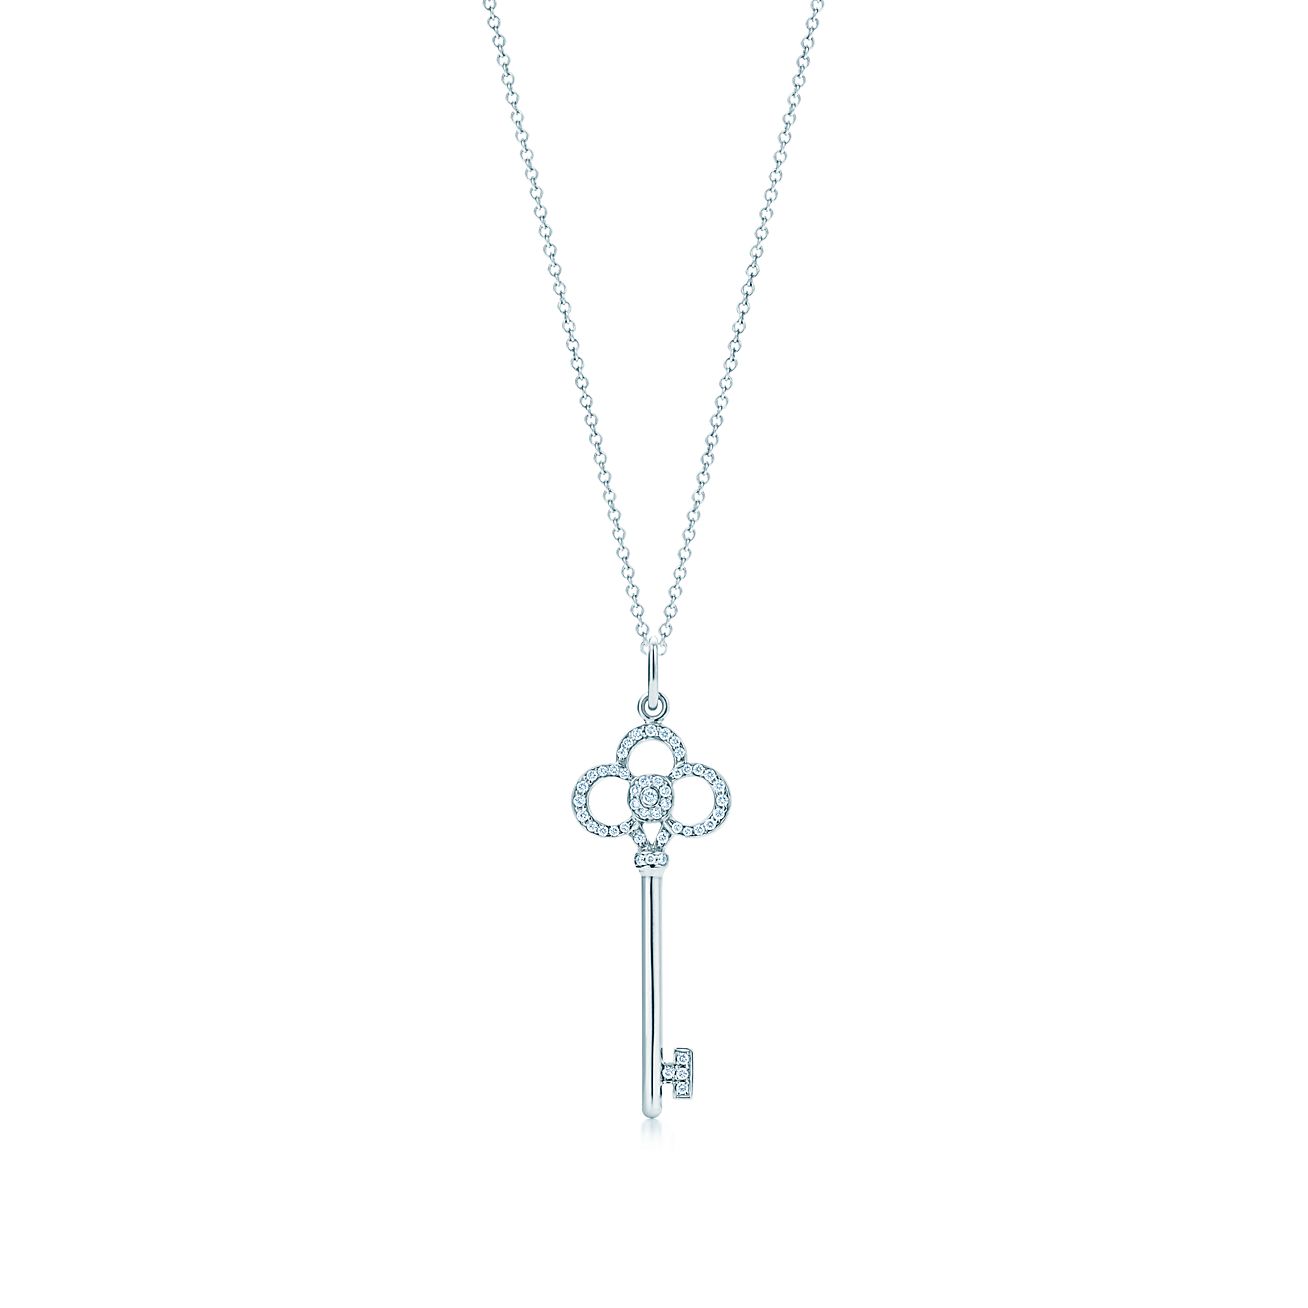 tiffany 3 key necklace